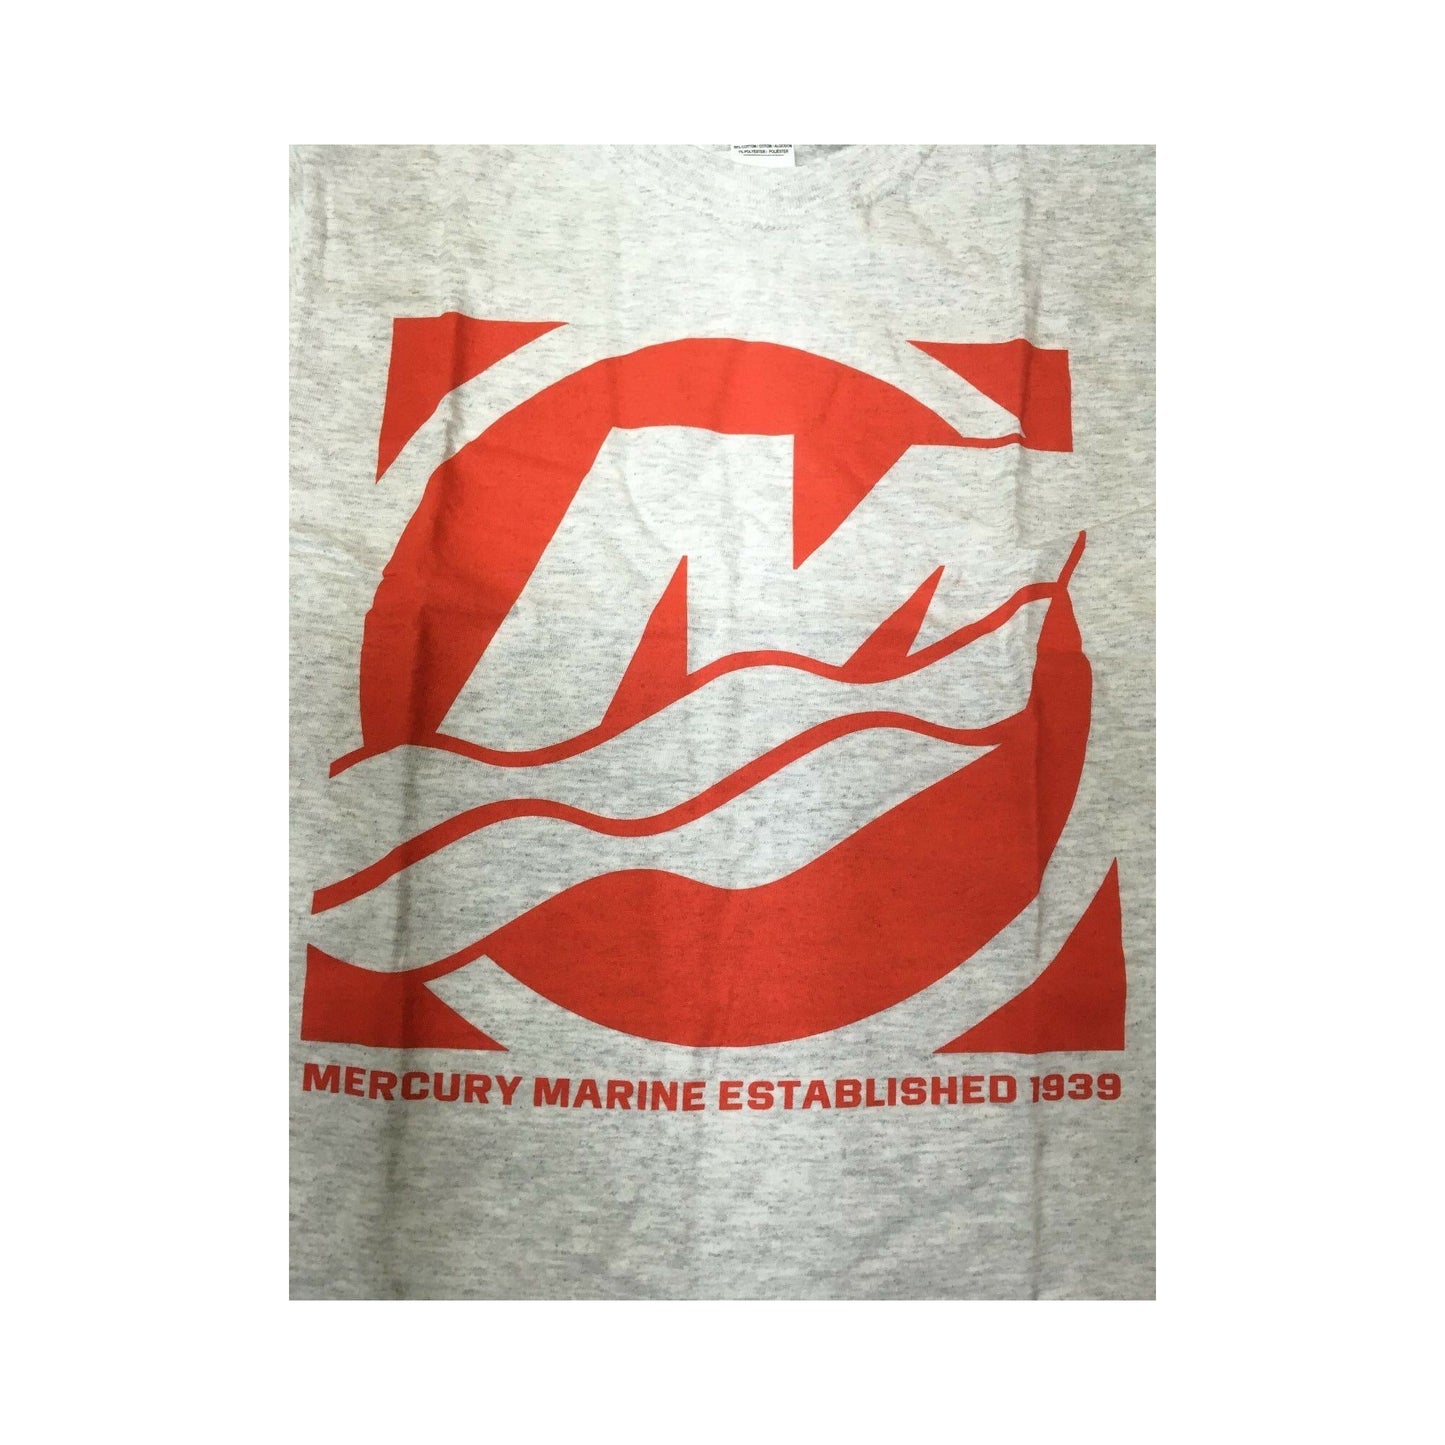 New Authentic Mercury Marine Short Sleeve Shirt Gray Red Quadrant Logo Large